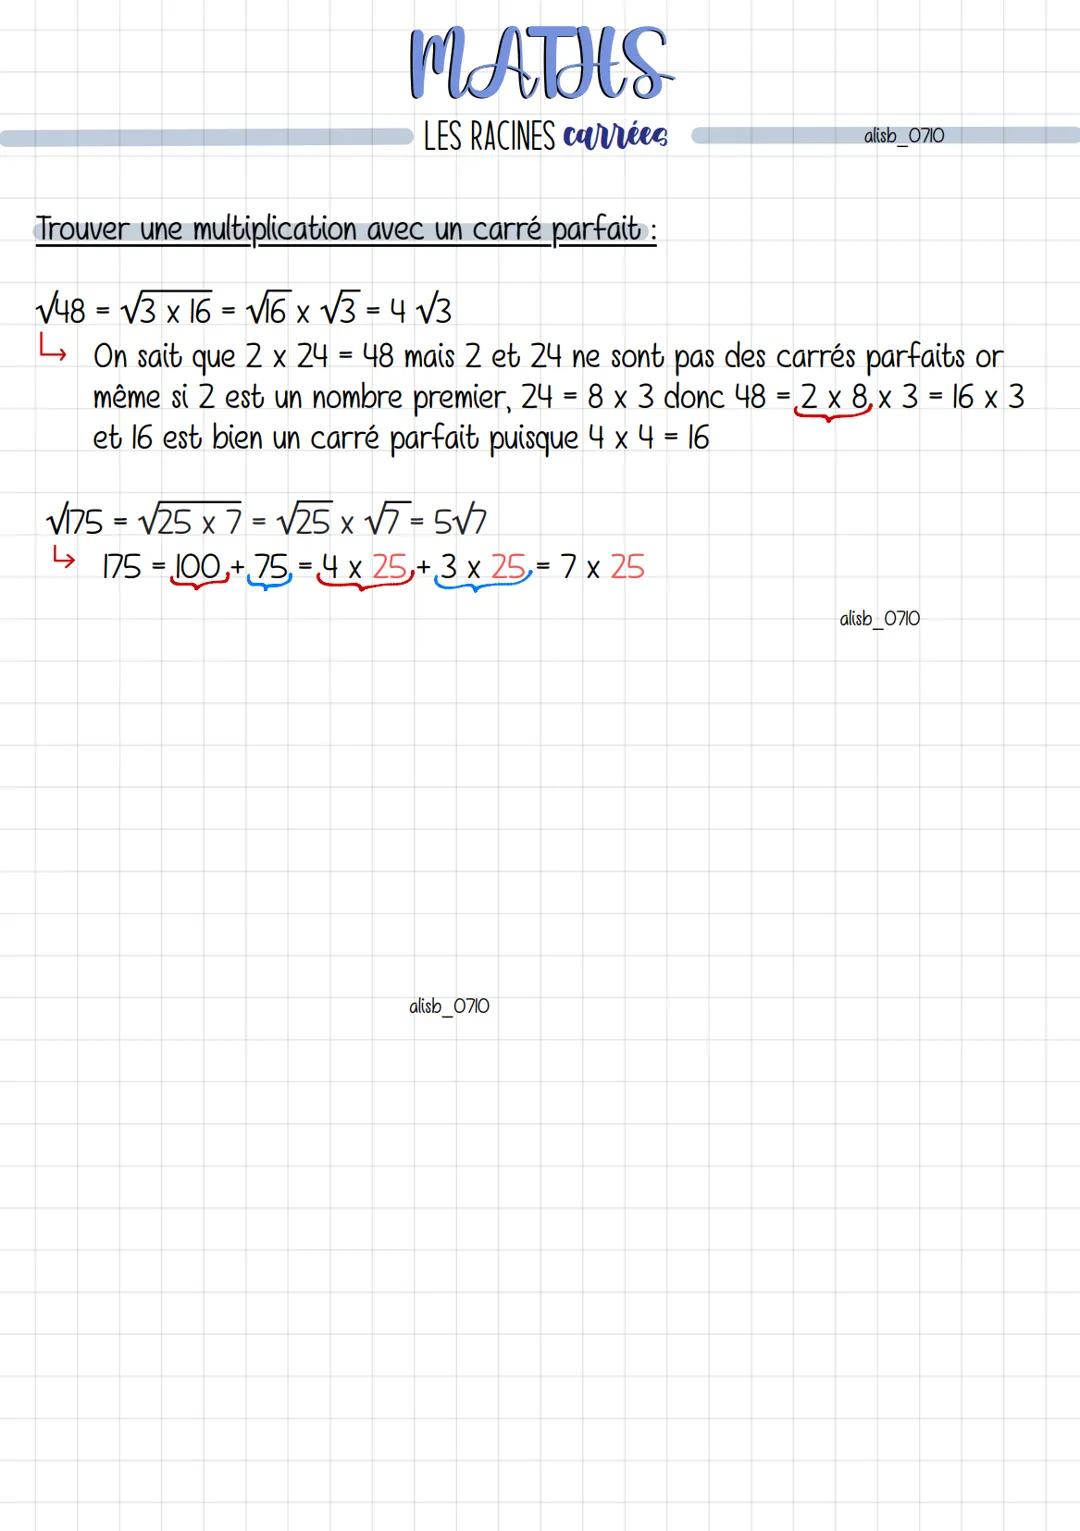 MATHS
LES RACINES carrées
rrrrr
√16 = 4
√25=5
Vo = 0
√1-1
√4=2
√9 = 3
√36 = 6
√49 = 7
√64 = 8
√81 - 9
=
✓100 = 10
√121 = 11
ross
√144 = 12
√